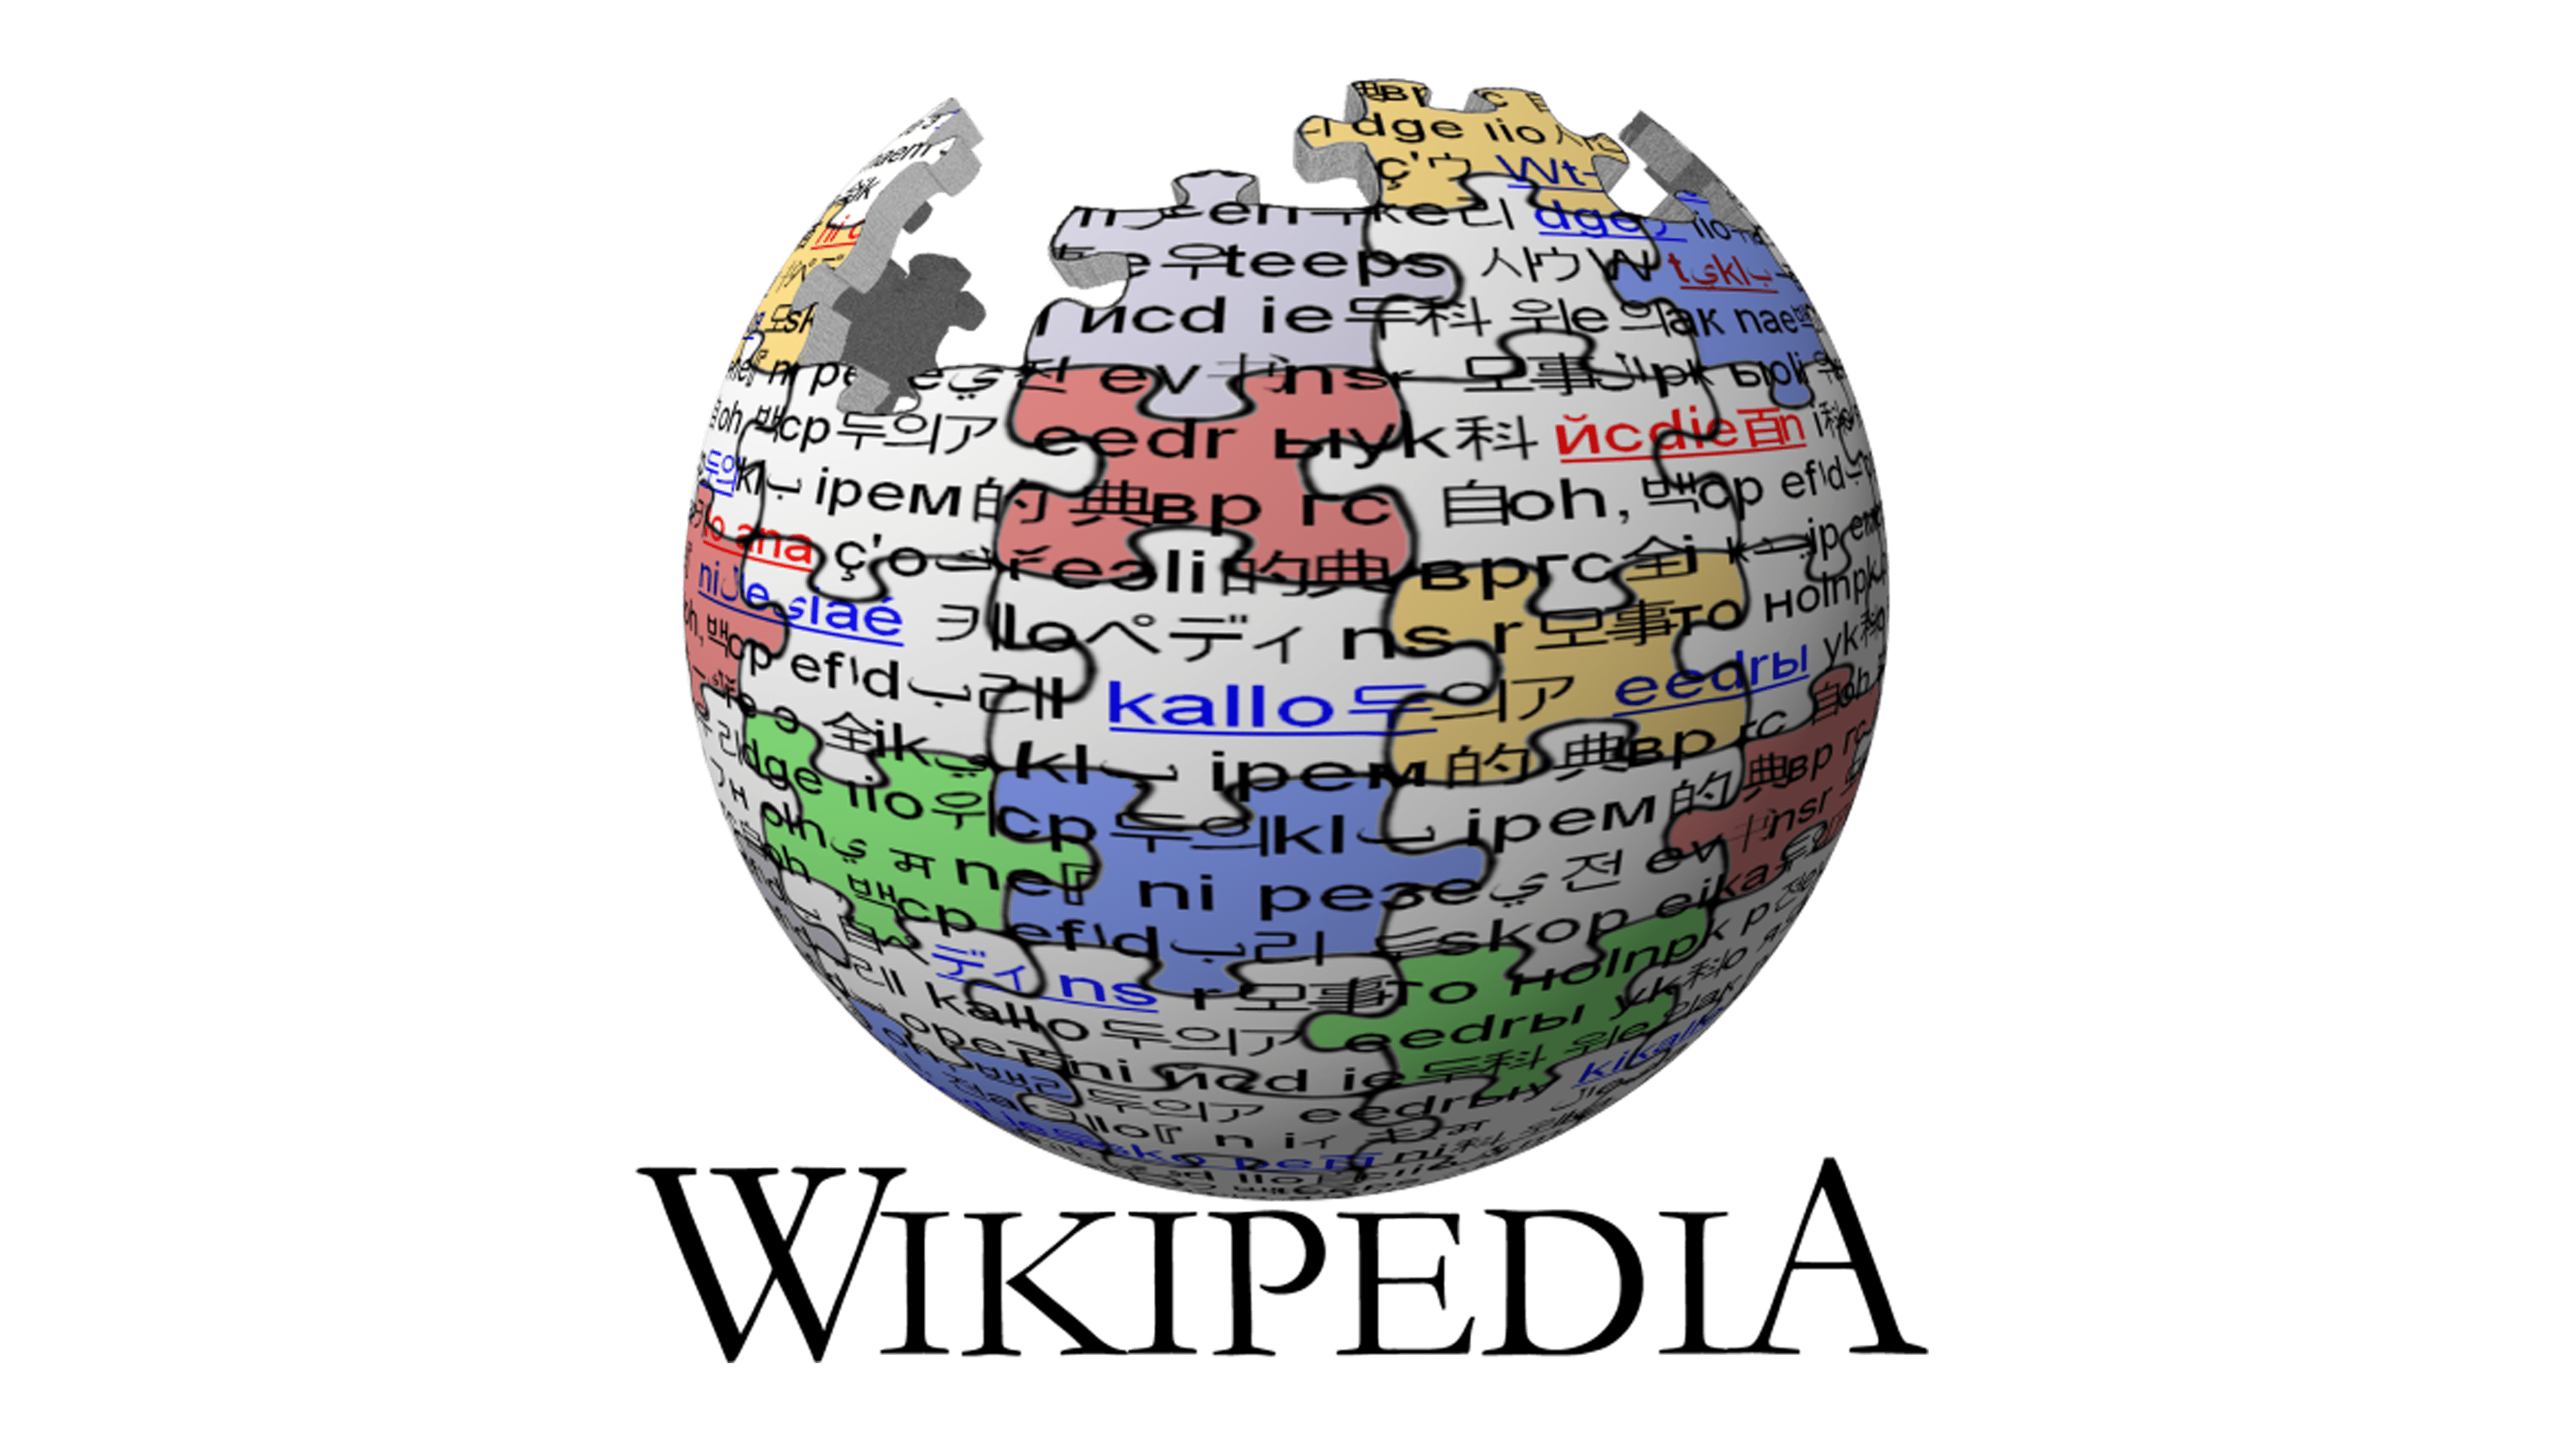  Wikipedia